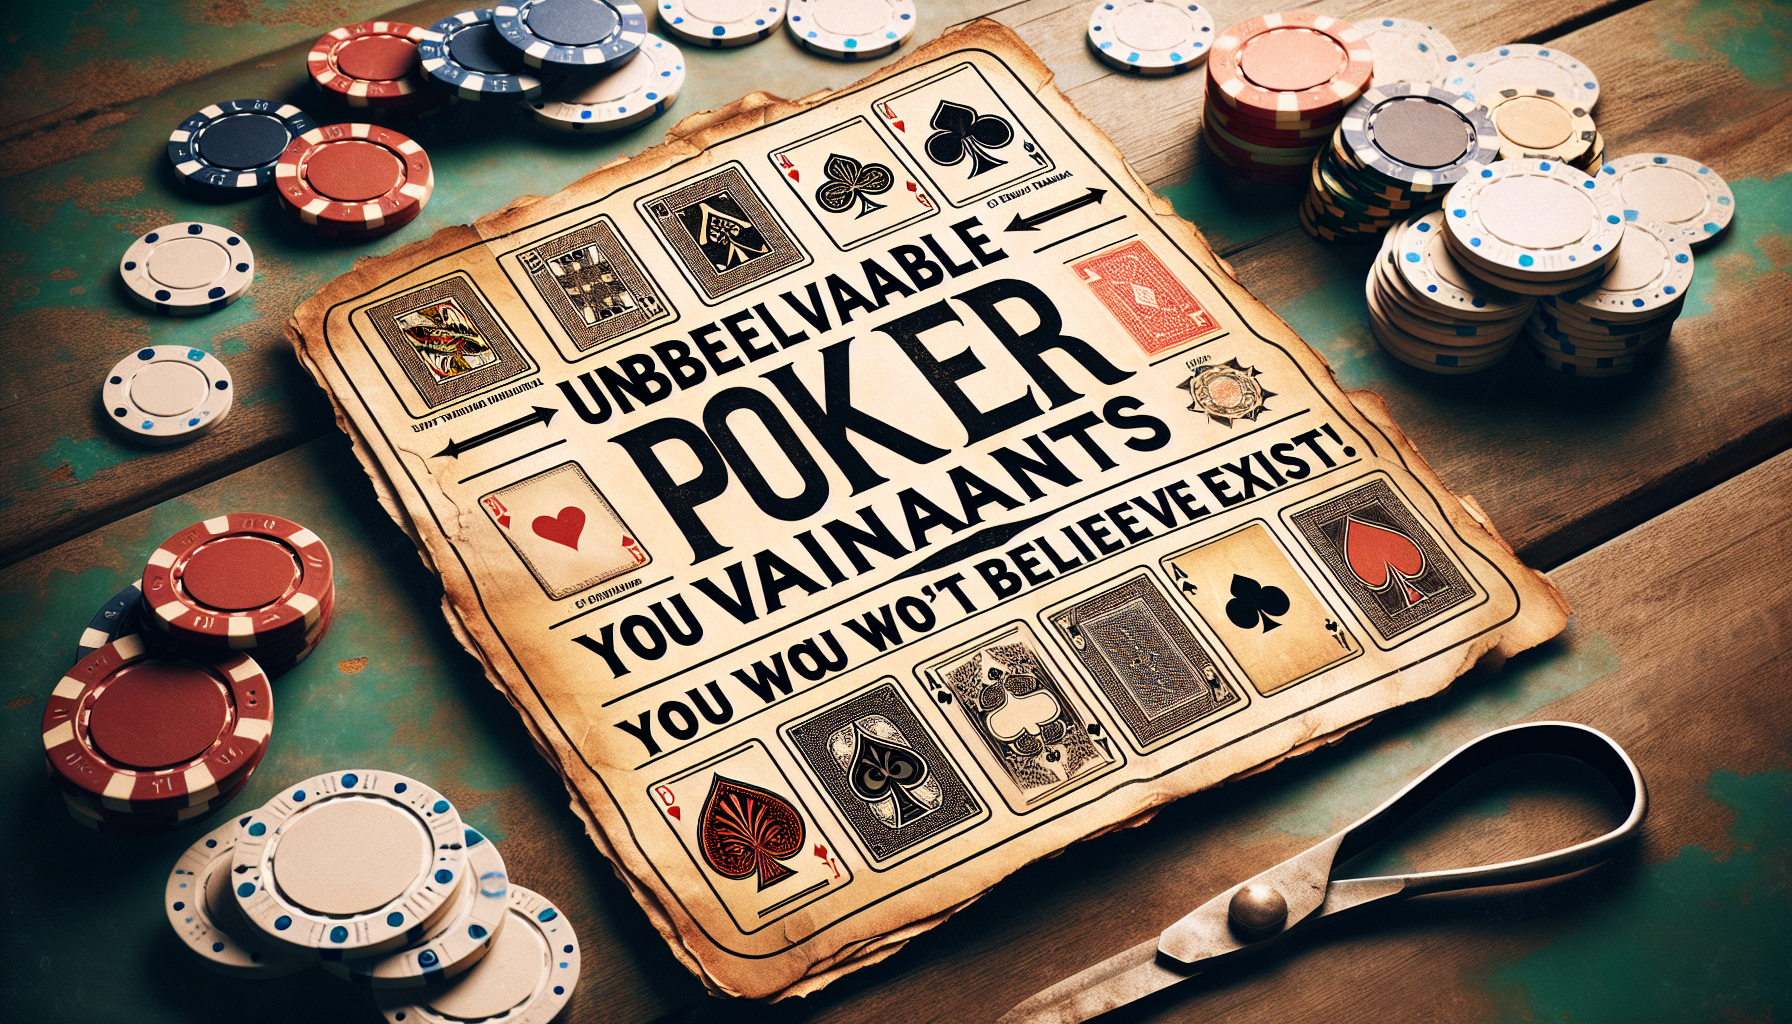 découvrez les différentes variantes du poker et apprenez à jouer à des jeux de cartes passionnants avec cette sélection de variantes de poker populaires.